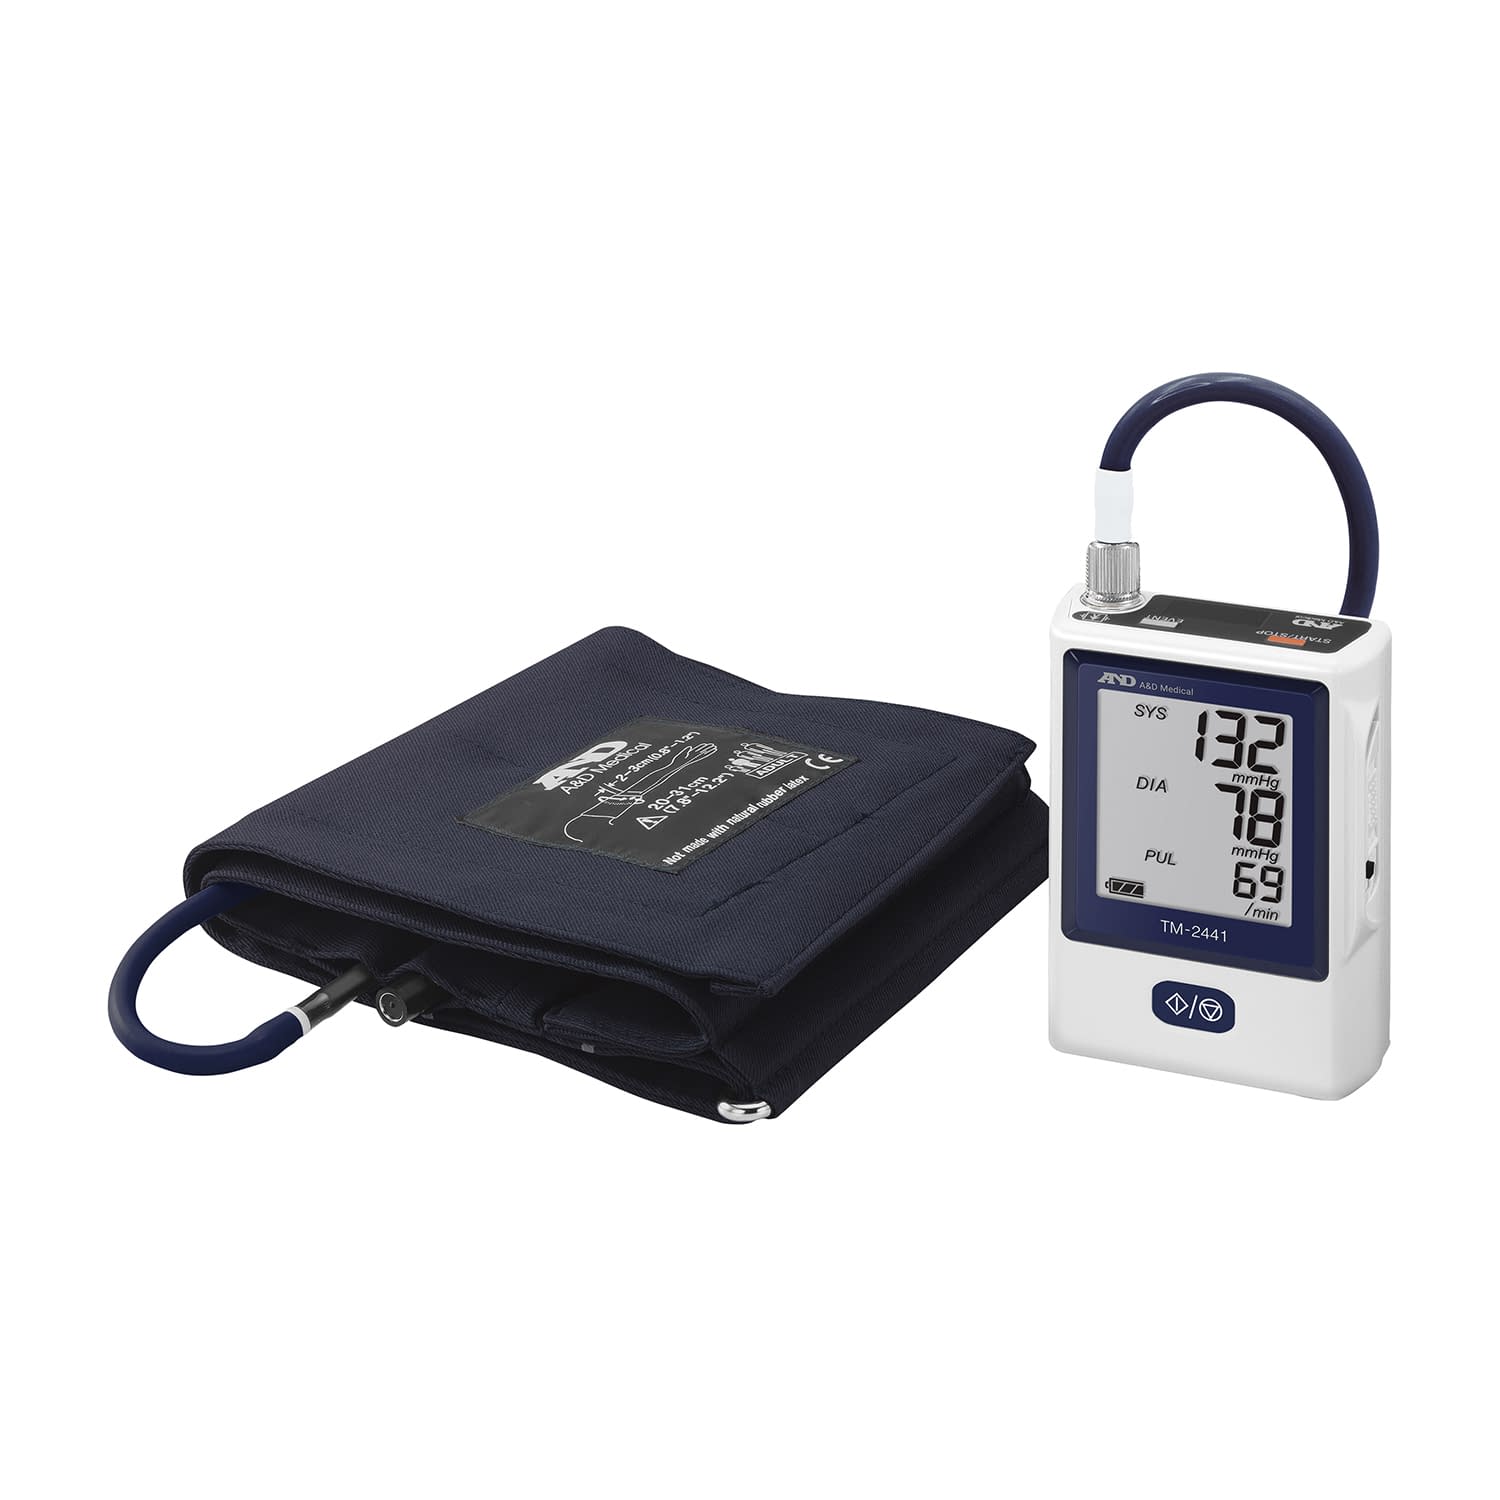 携帯型自動血圧計 TM-2441 TM-2441L-JC116  24-9820-00【エー・アンド・デイ】(TM-2441)(24-9820-00)